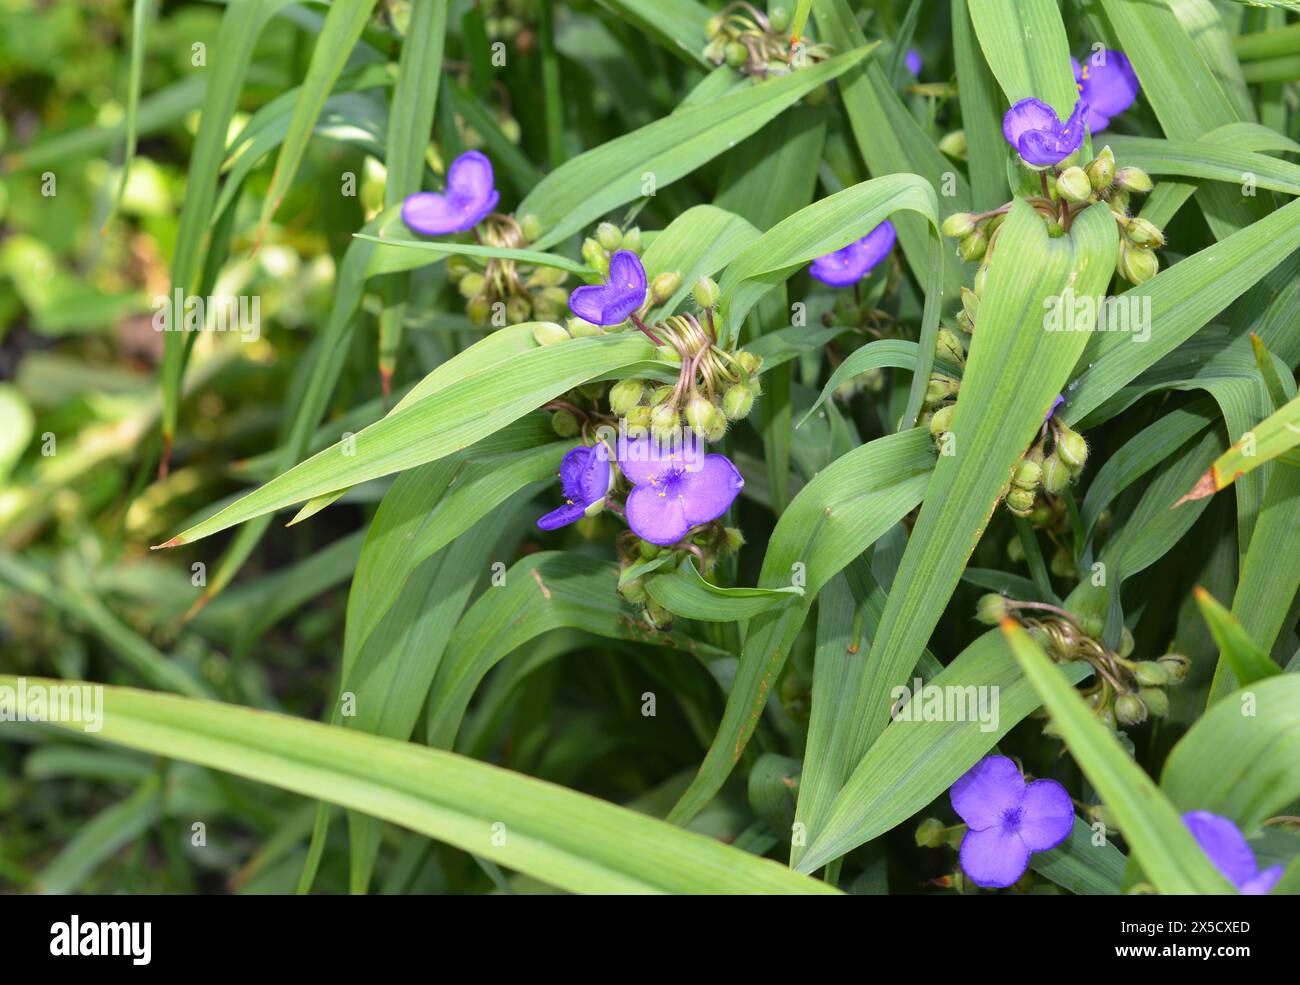 Tradescantia virginiana, the Virginia spiderwort  flowers. Blooming blue Tradescantia (Tradescantia virginiana) in the garden. Stock Photo